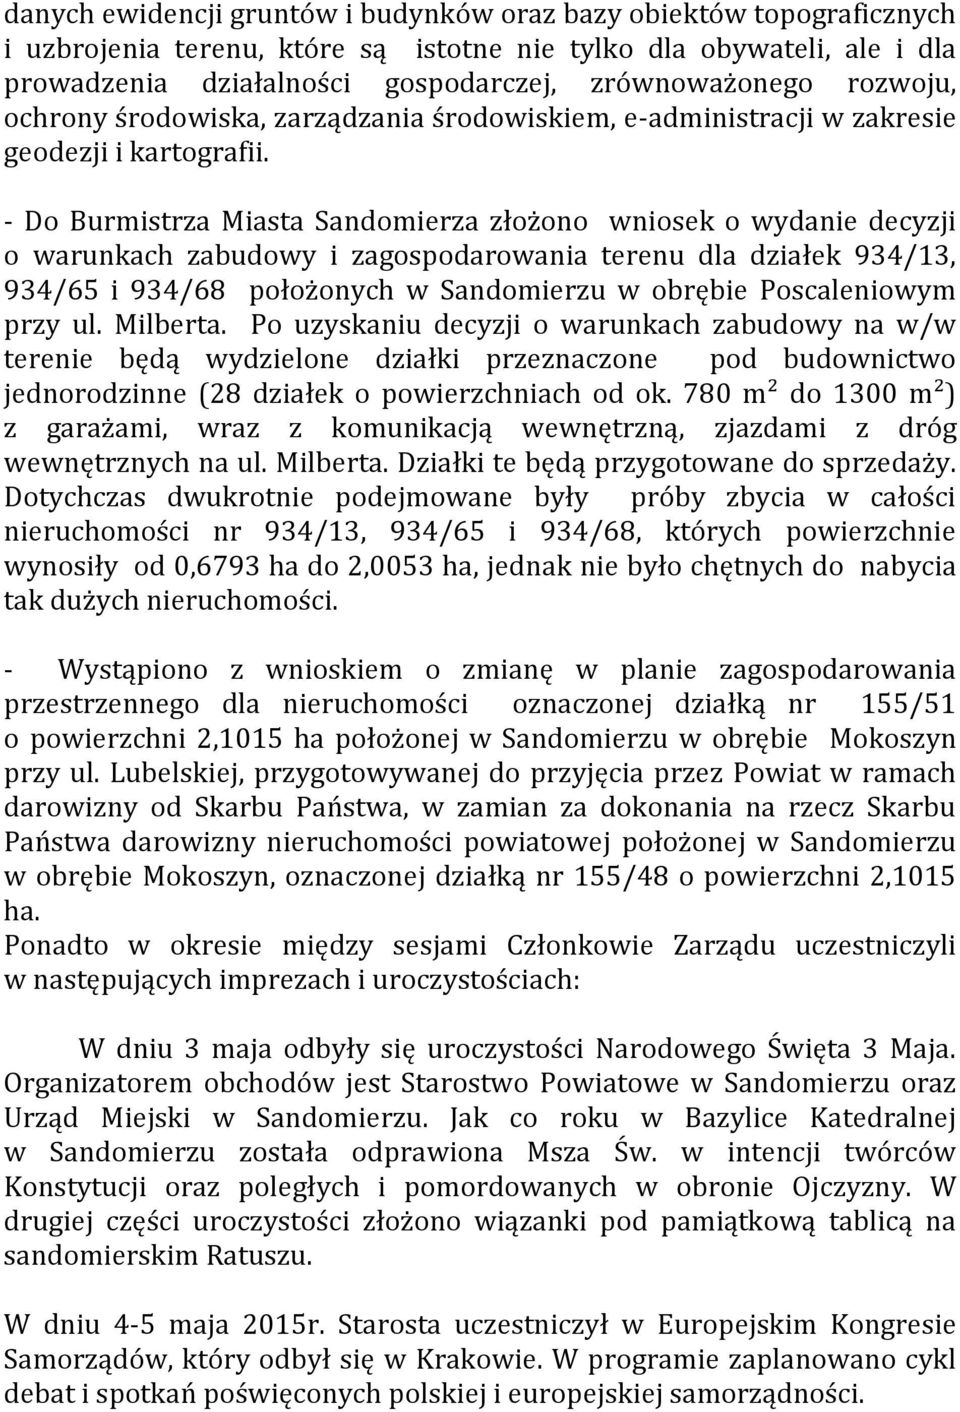 - Do Burmistrza Miasta Sandomierza złożono wniosek o wydanie decyzji o warunkach zabudowy i zagospodarowania terenu dla działek 934/13, 934/65 i 934/68 położonych w Sandomierzu w obrębie